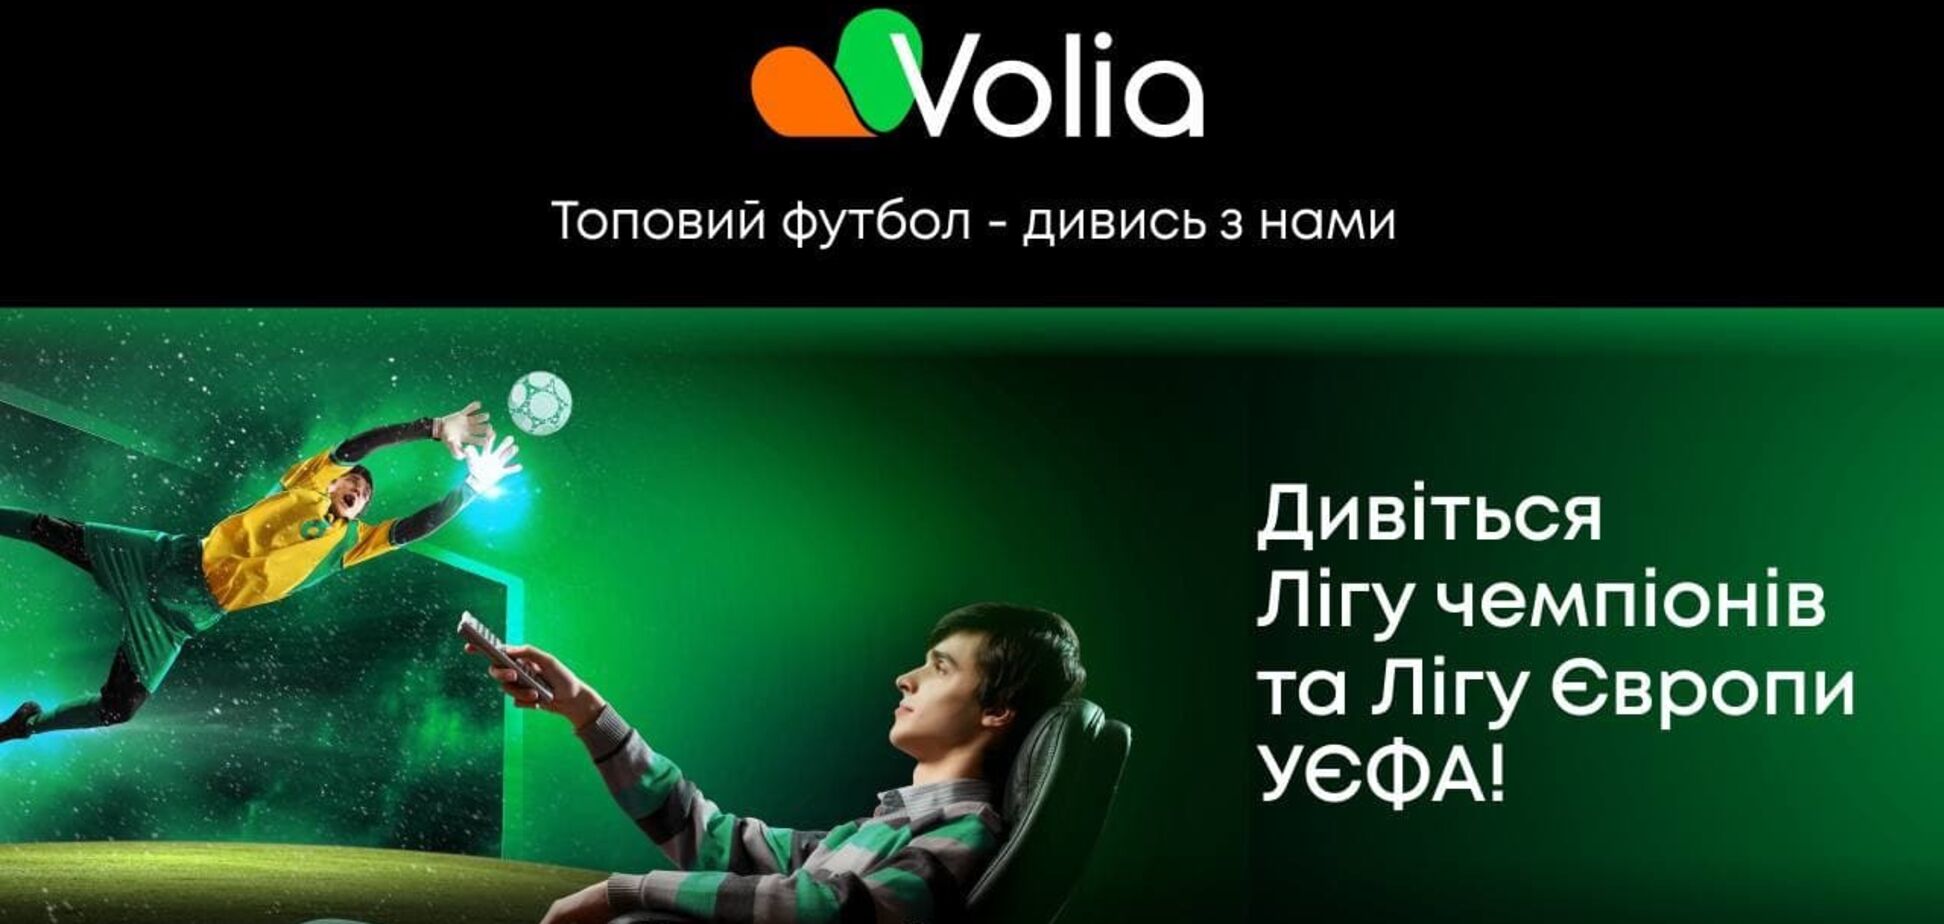 Volia TV будут доступны трансляции еврокубков через специальные поп-ап-каналы MEGOGO Футбол